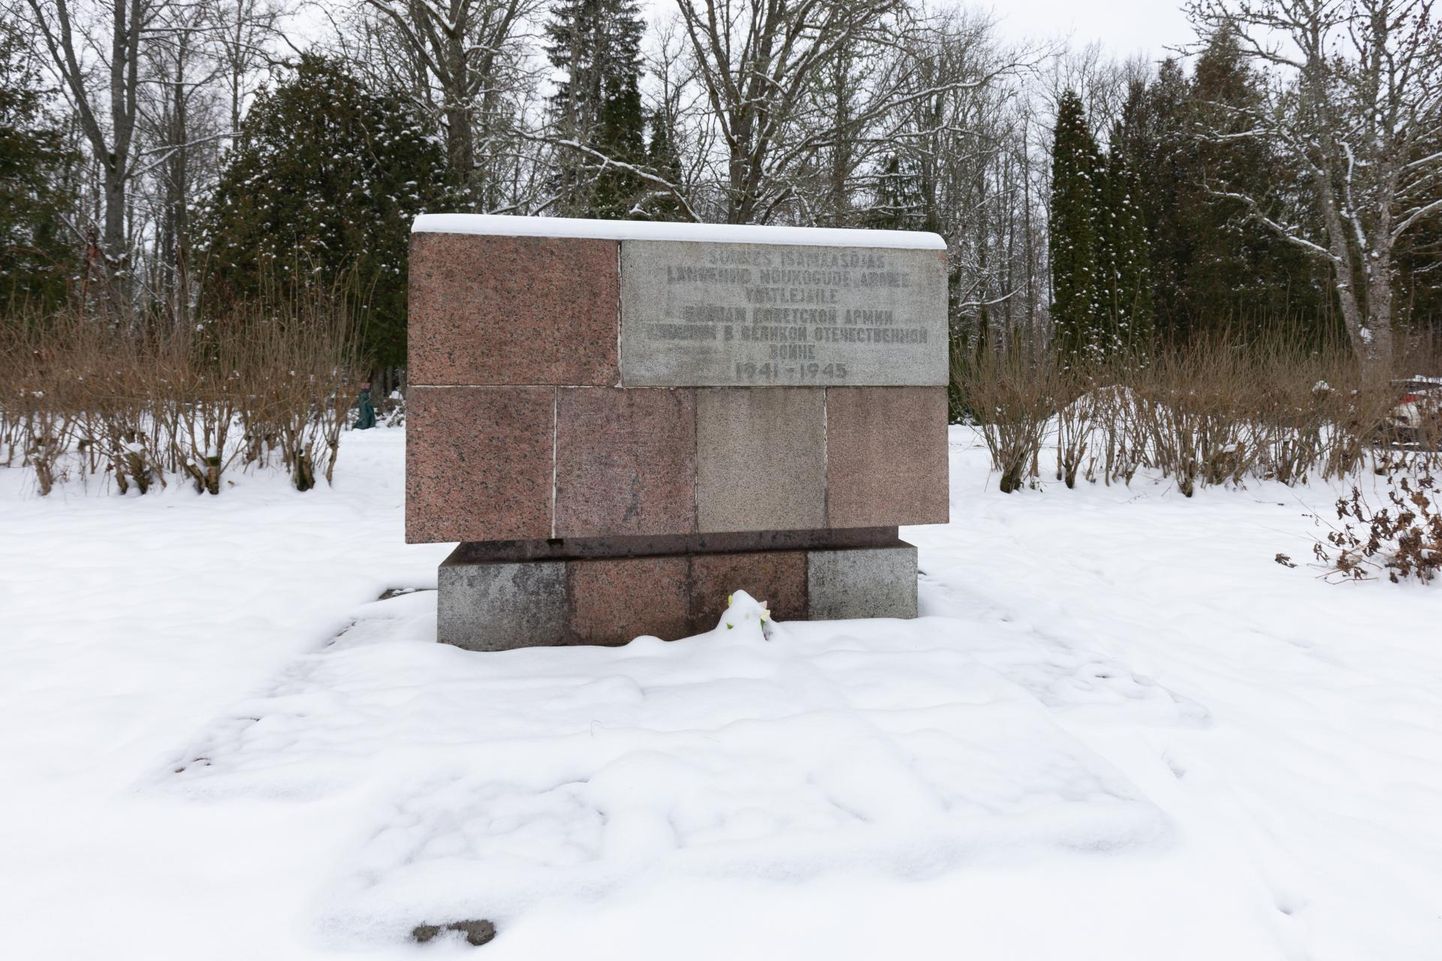 Halliste kalmistu kirdepiiri taha ühishauda on maetud 37–40 Nõukogude armee sõjaväelast ja tsiviilisikut, nende hulgas kohalikke.